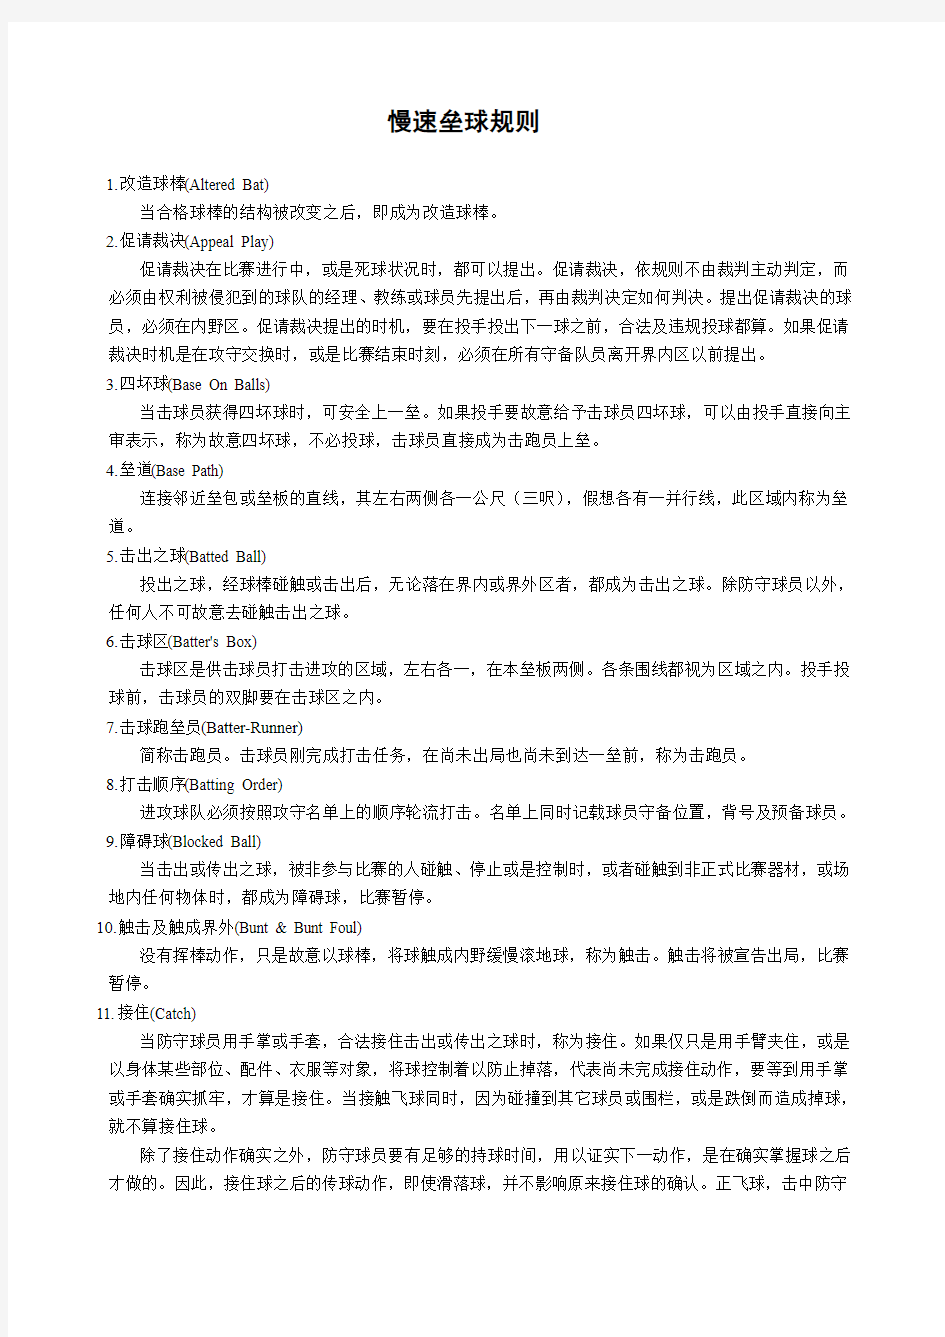 中华人民共和国慢速垒球规则